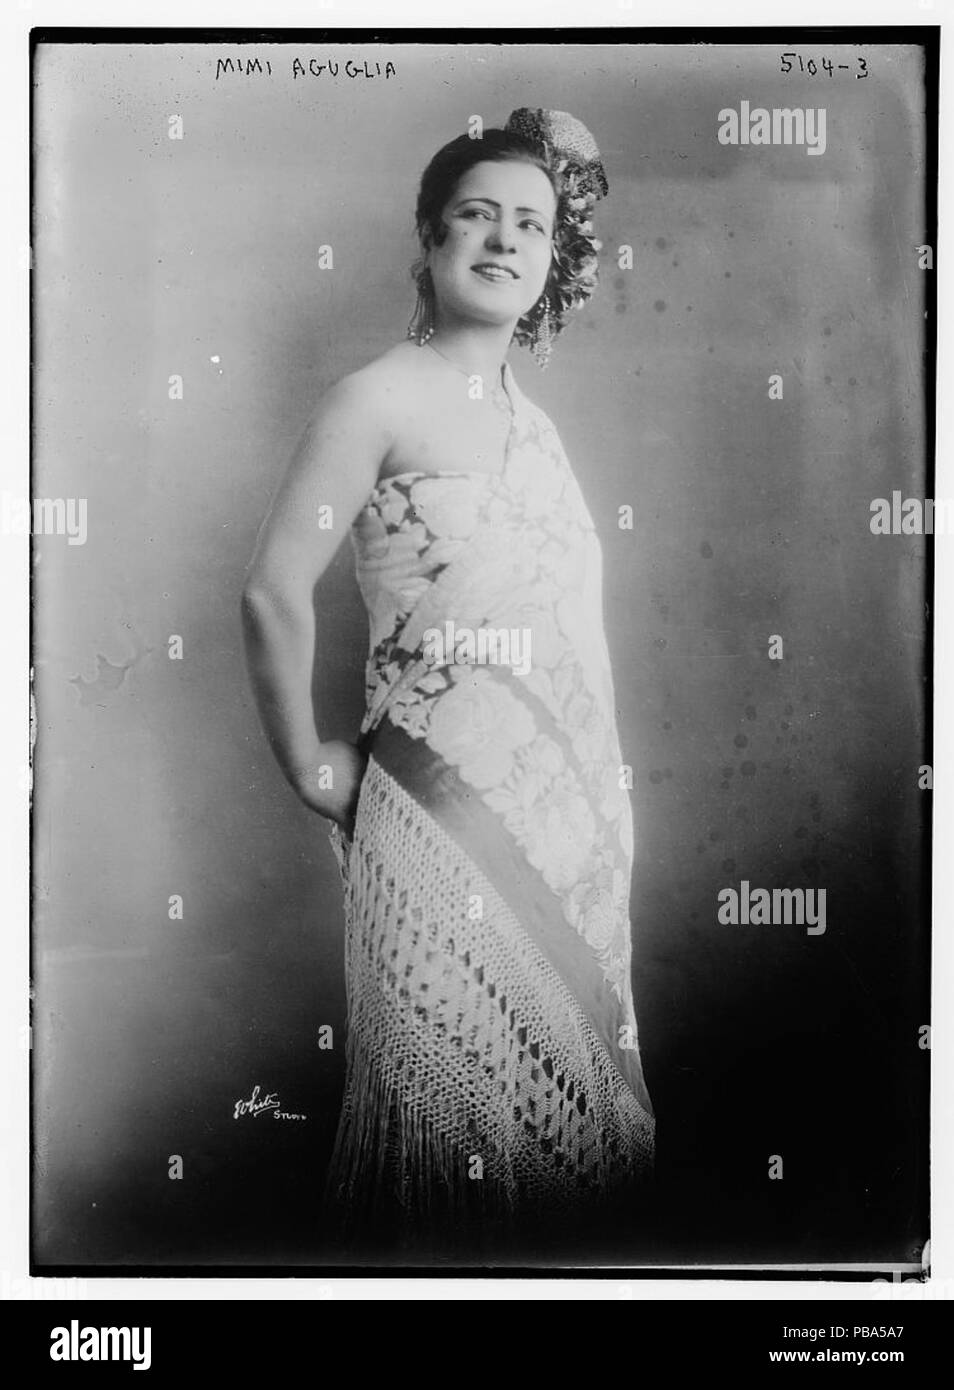 1046 Mimi Aguglia in 1920 Stock Photo